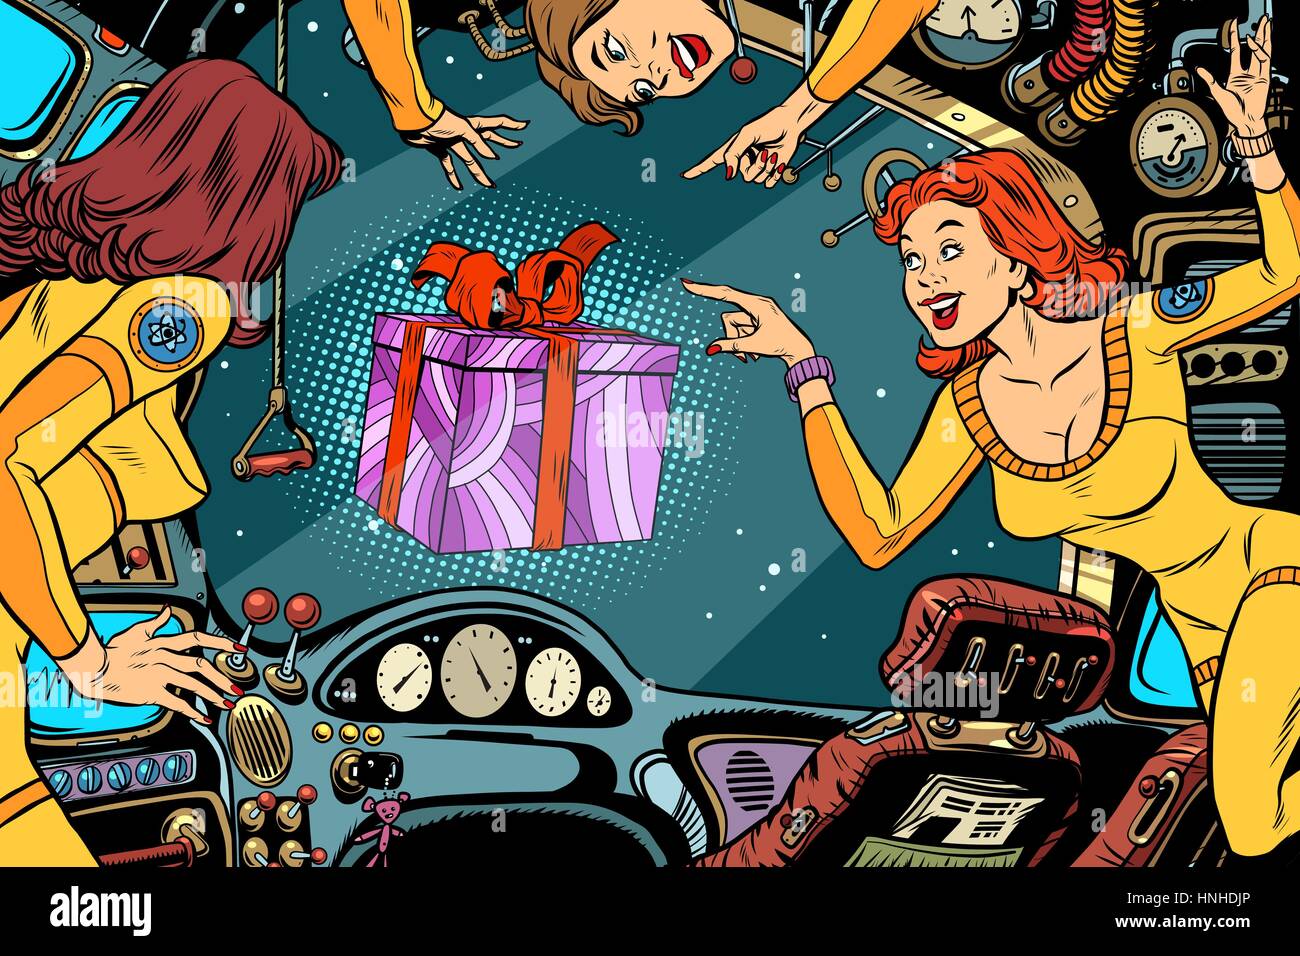 Le donne gli astronauti in cabina di una nave spaziale e confezione regalo. Fumetti Vintage pop art a colori retrò illustrazione. International womens day e la festa della mamma Illustrazione Vettoriale